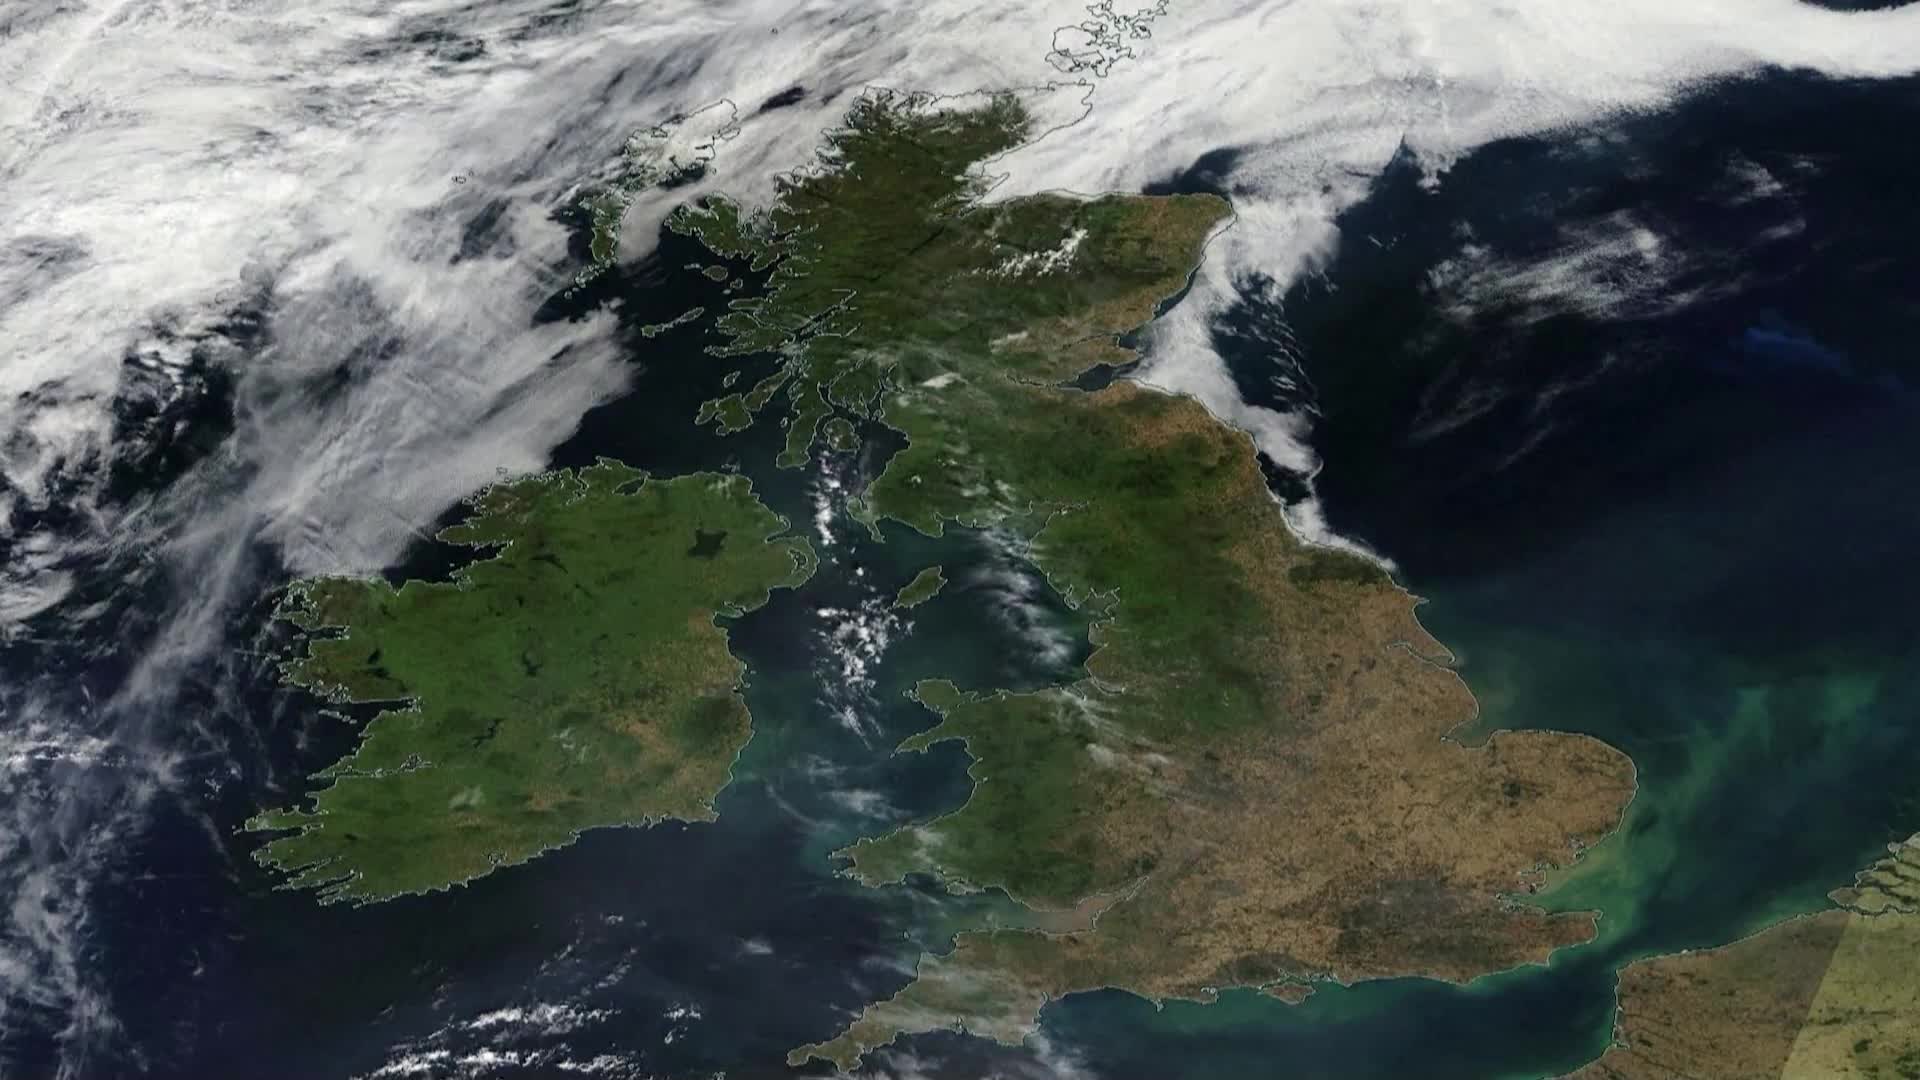 Сушата във Великобритания - видима и от Космоса (ВИДЕО)